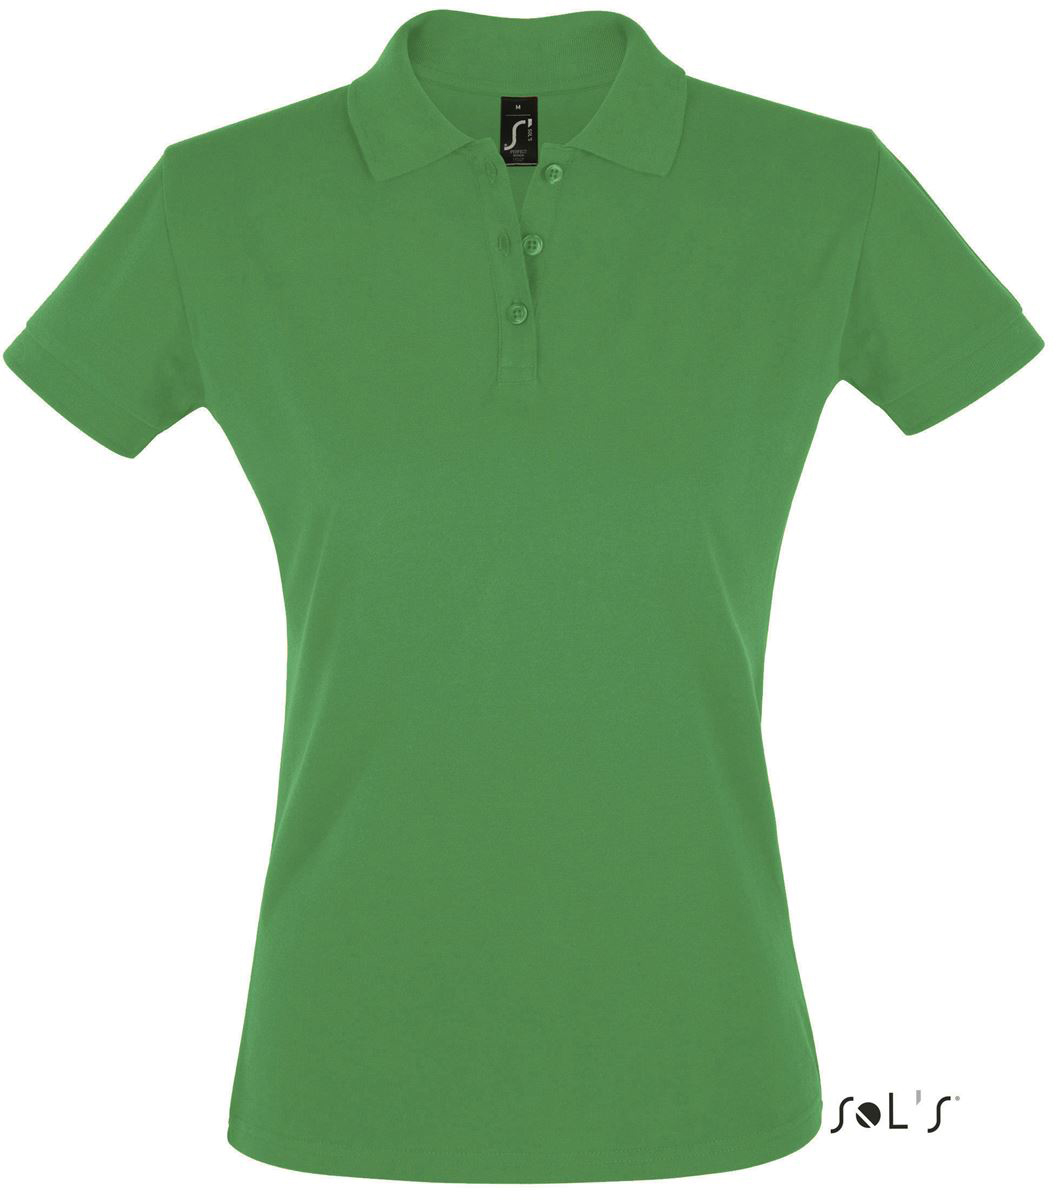 Sol's Perfect Women - Polo Shirt - Sol's Perfect Women - Polo Shirt - Irish Green